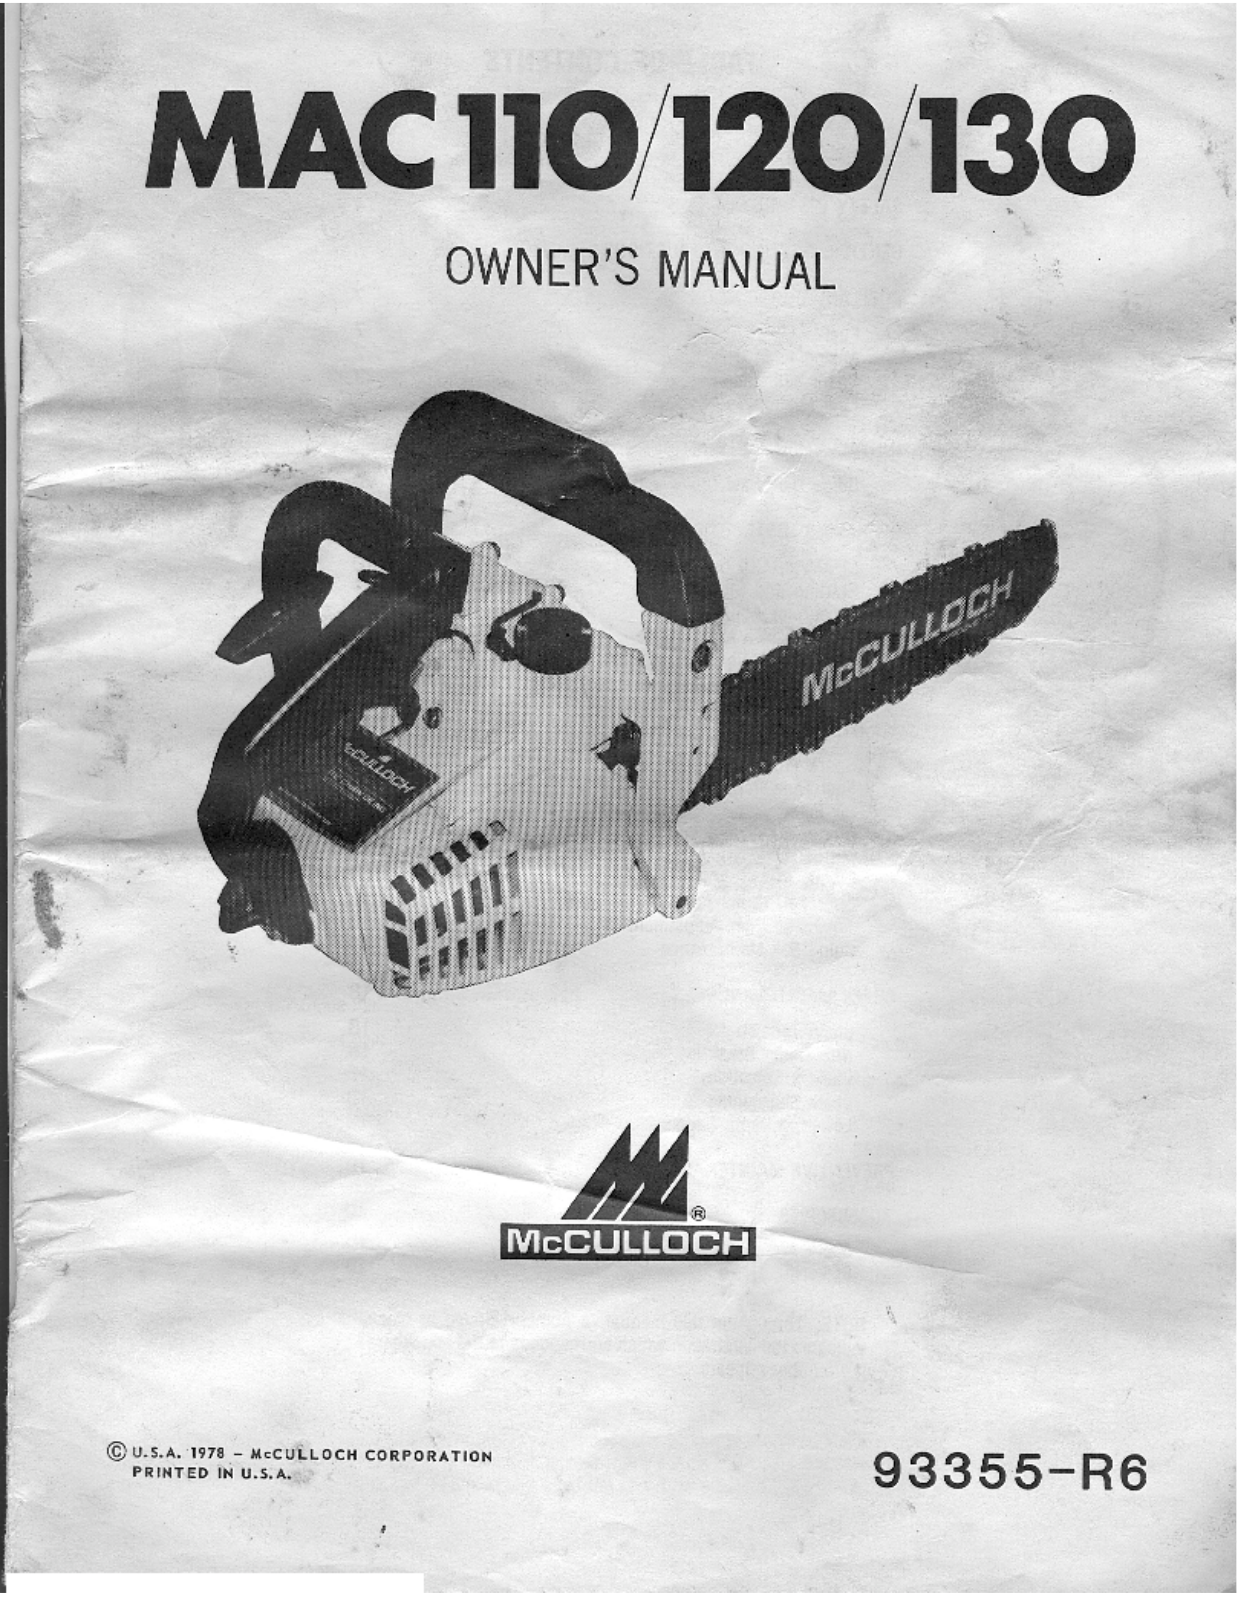 McCulloch Mac 110, Mac 120, Mac 130 Owner's Manual